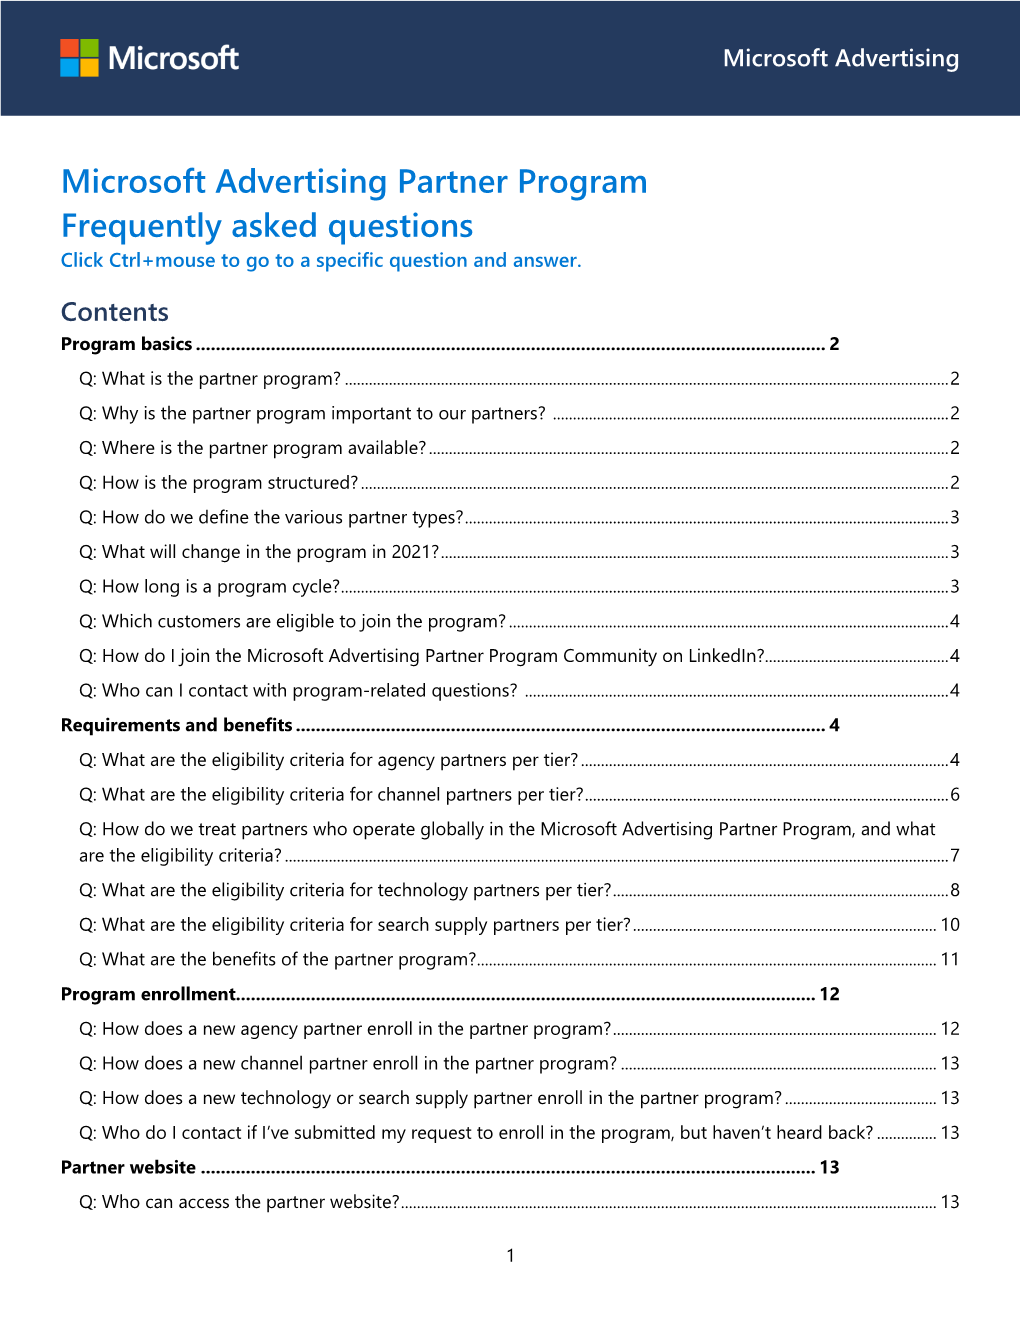 2021 Microsoft Advertising Partner Program